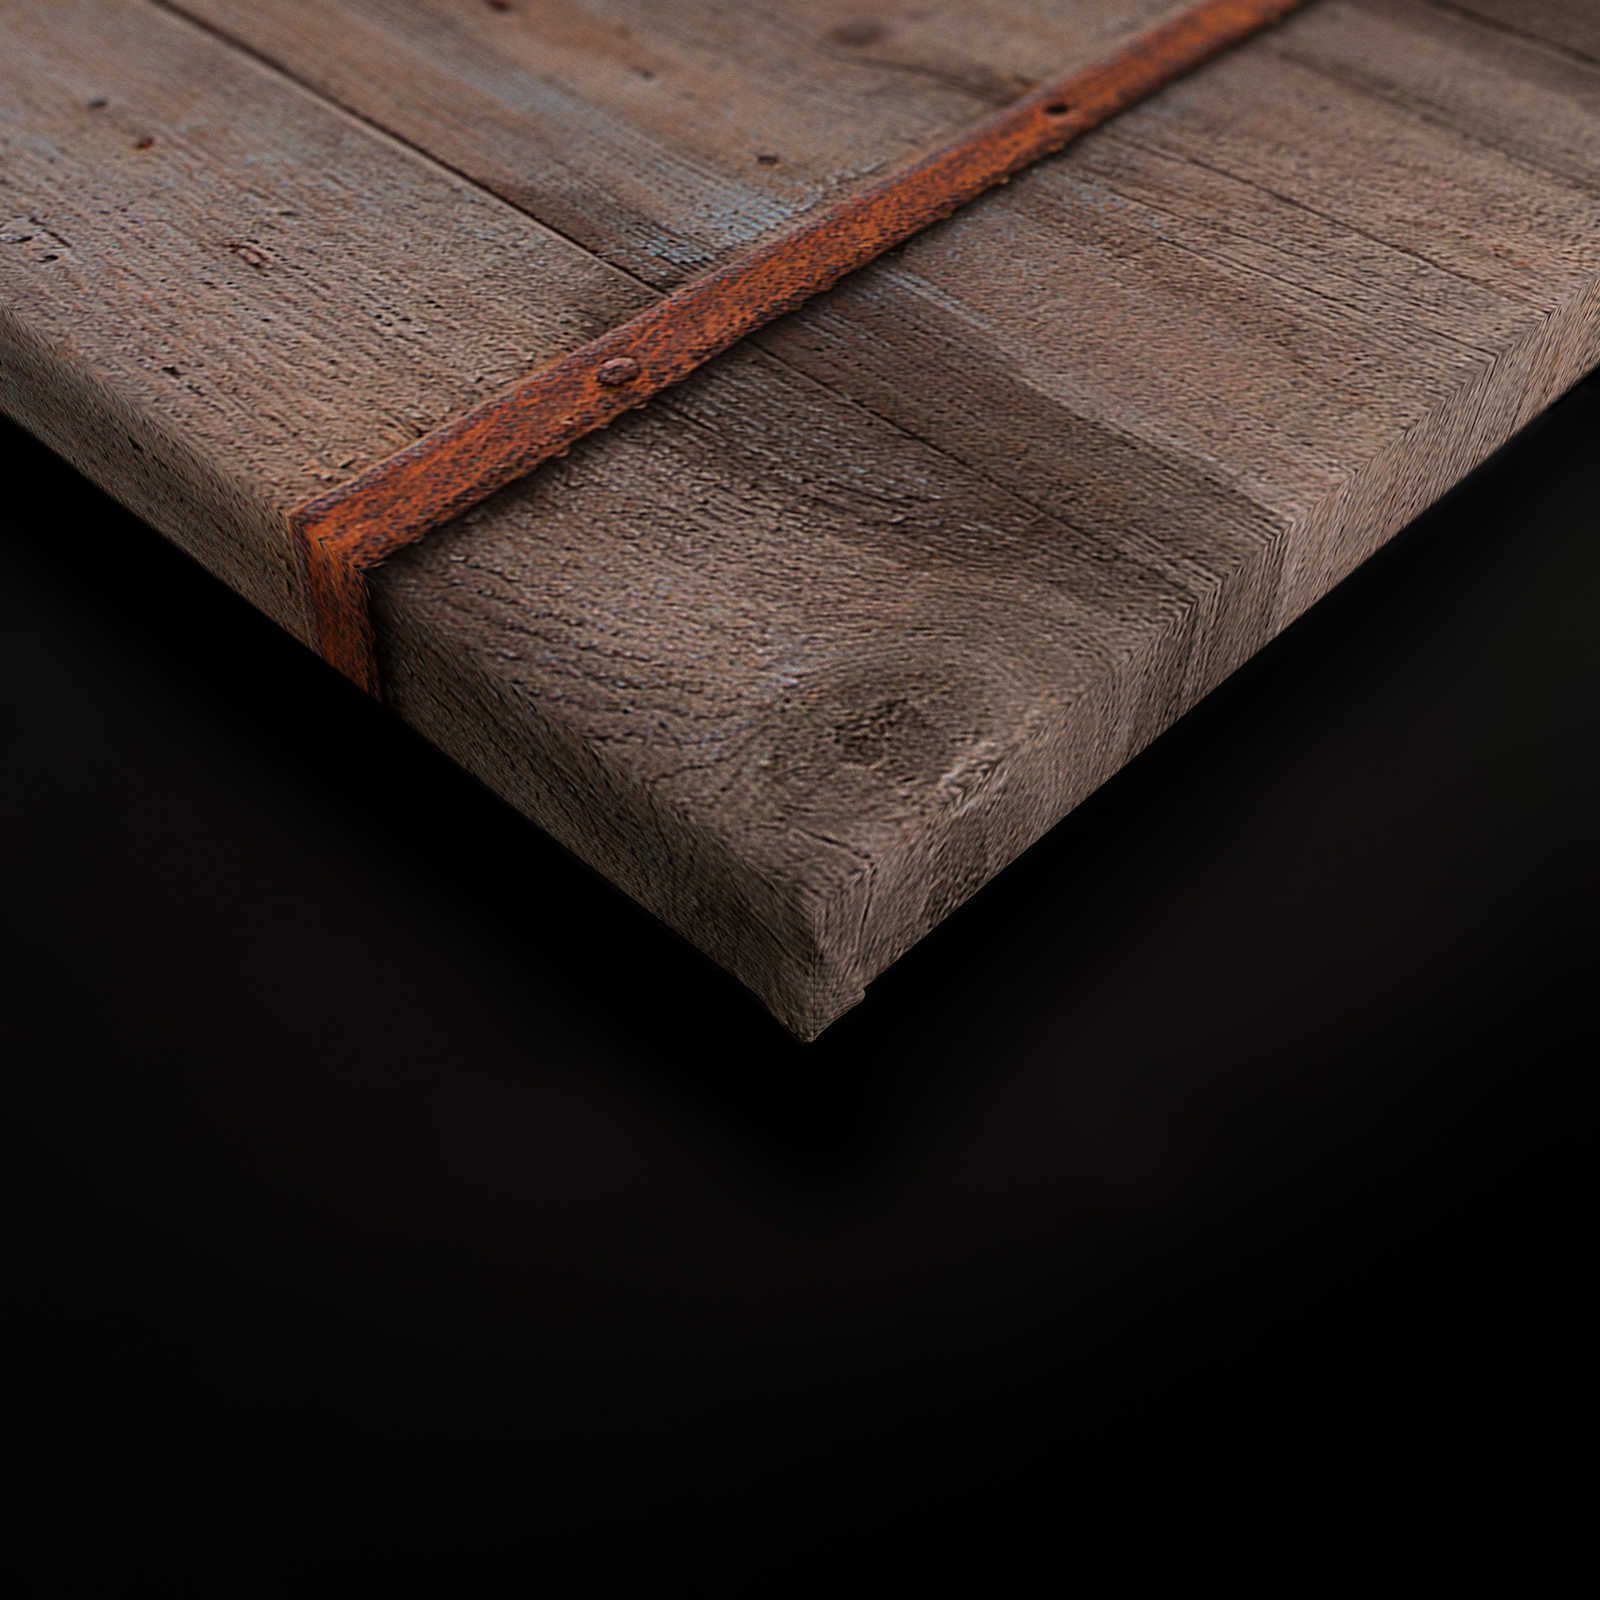             Lienzo de madera Pintura Puerta de Granero Aspecto Usado - 0,90 m x 0,60 m
        